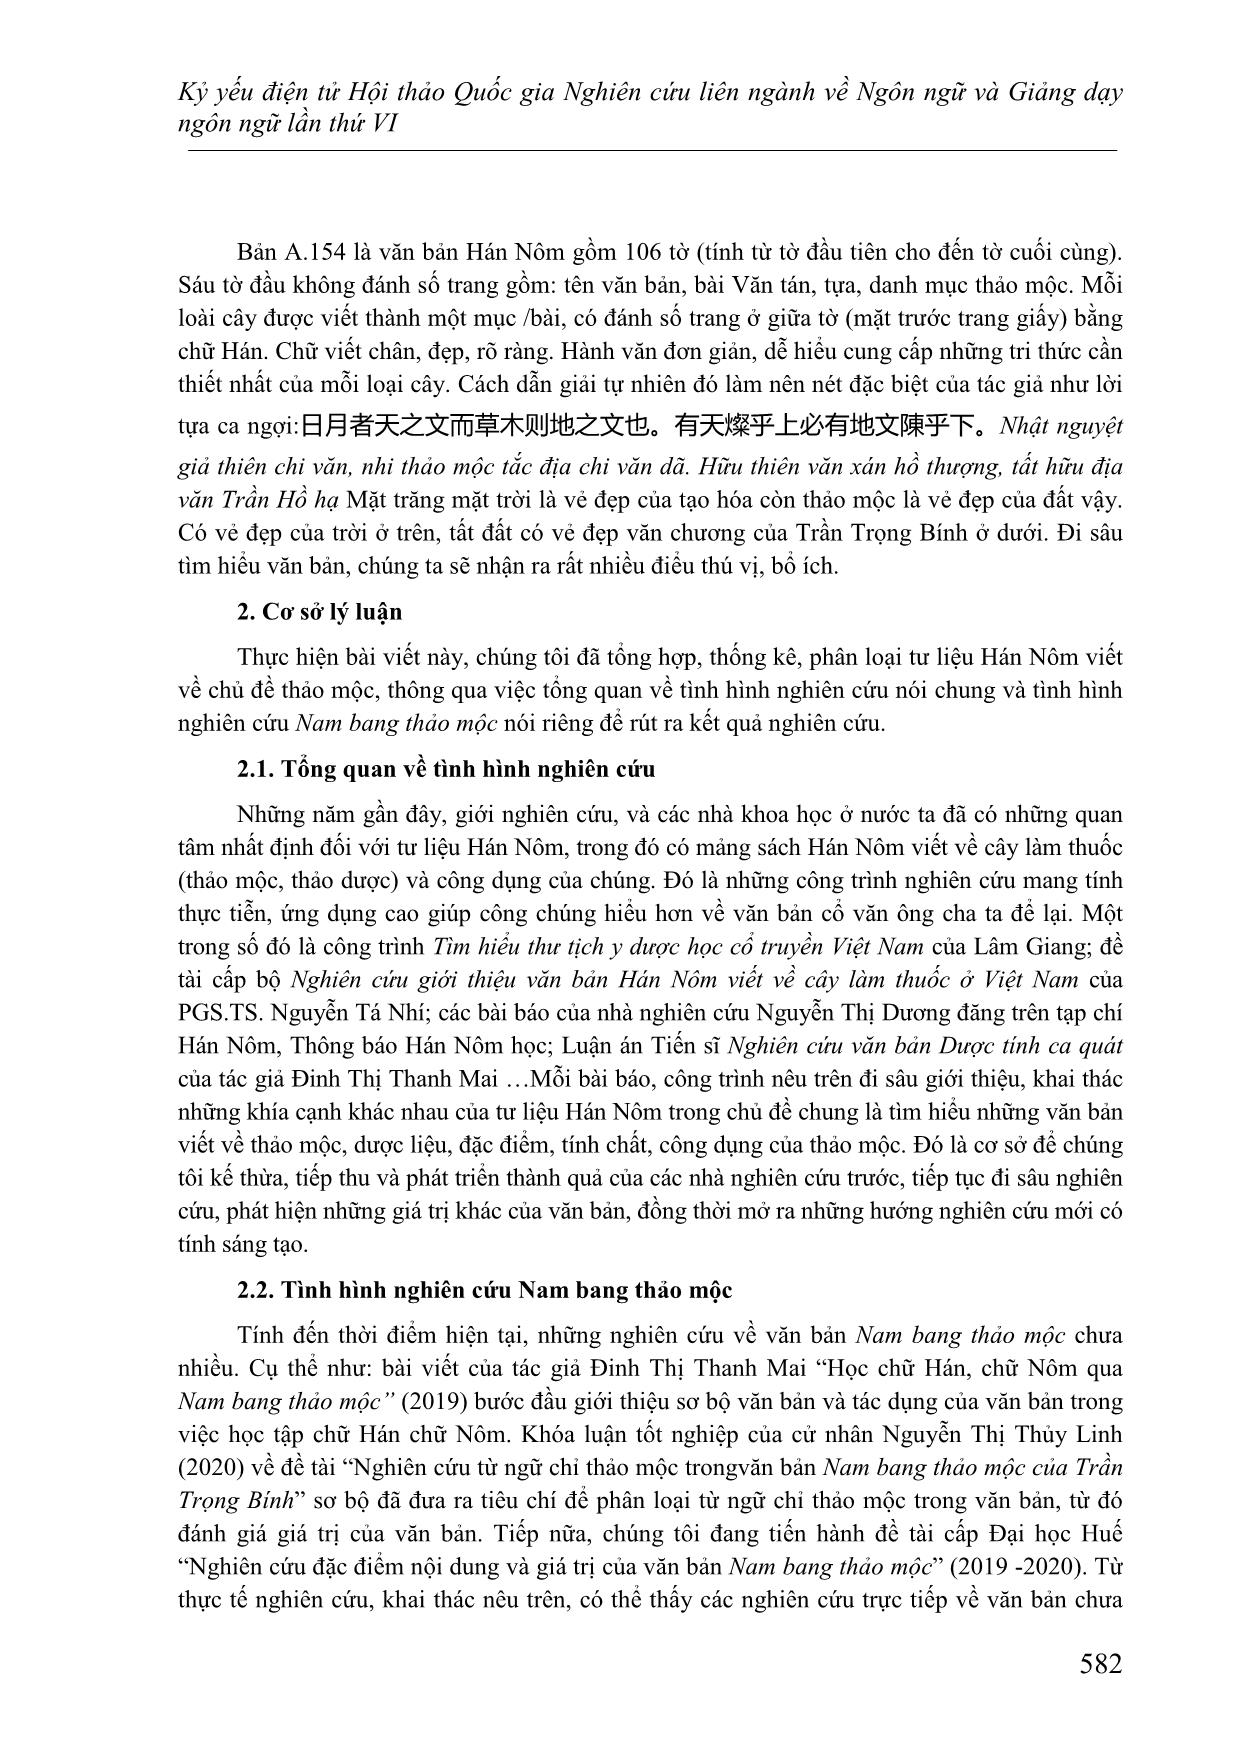 Từ ngữ chỉ thảo mộc và tính ứng dụng trong 南邦草木 Nam bang thảo mộc của Trần Trọng Bính trang 2